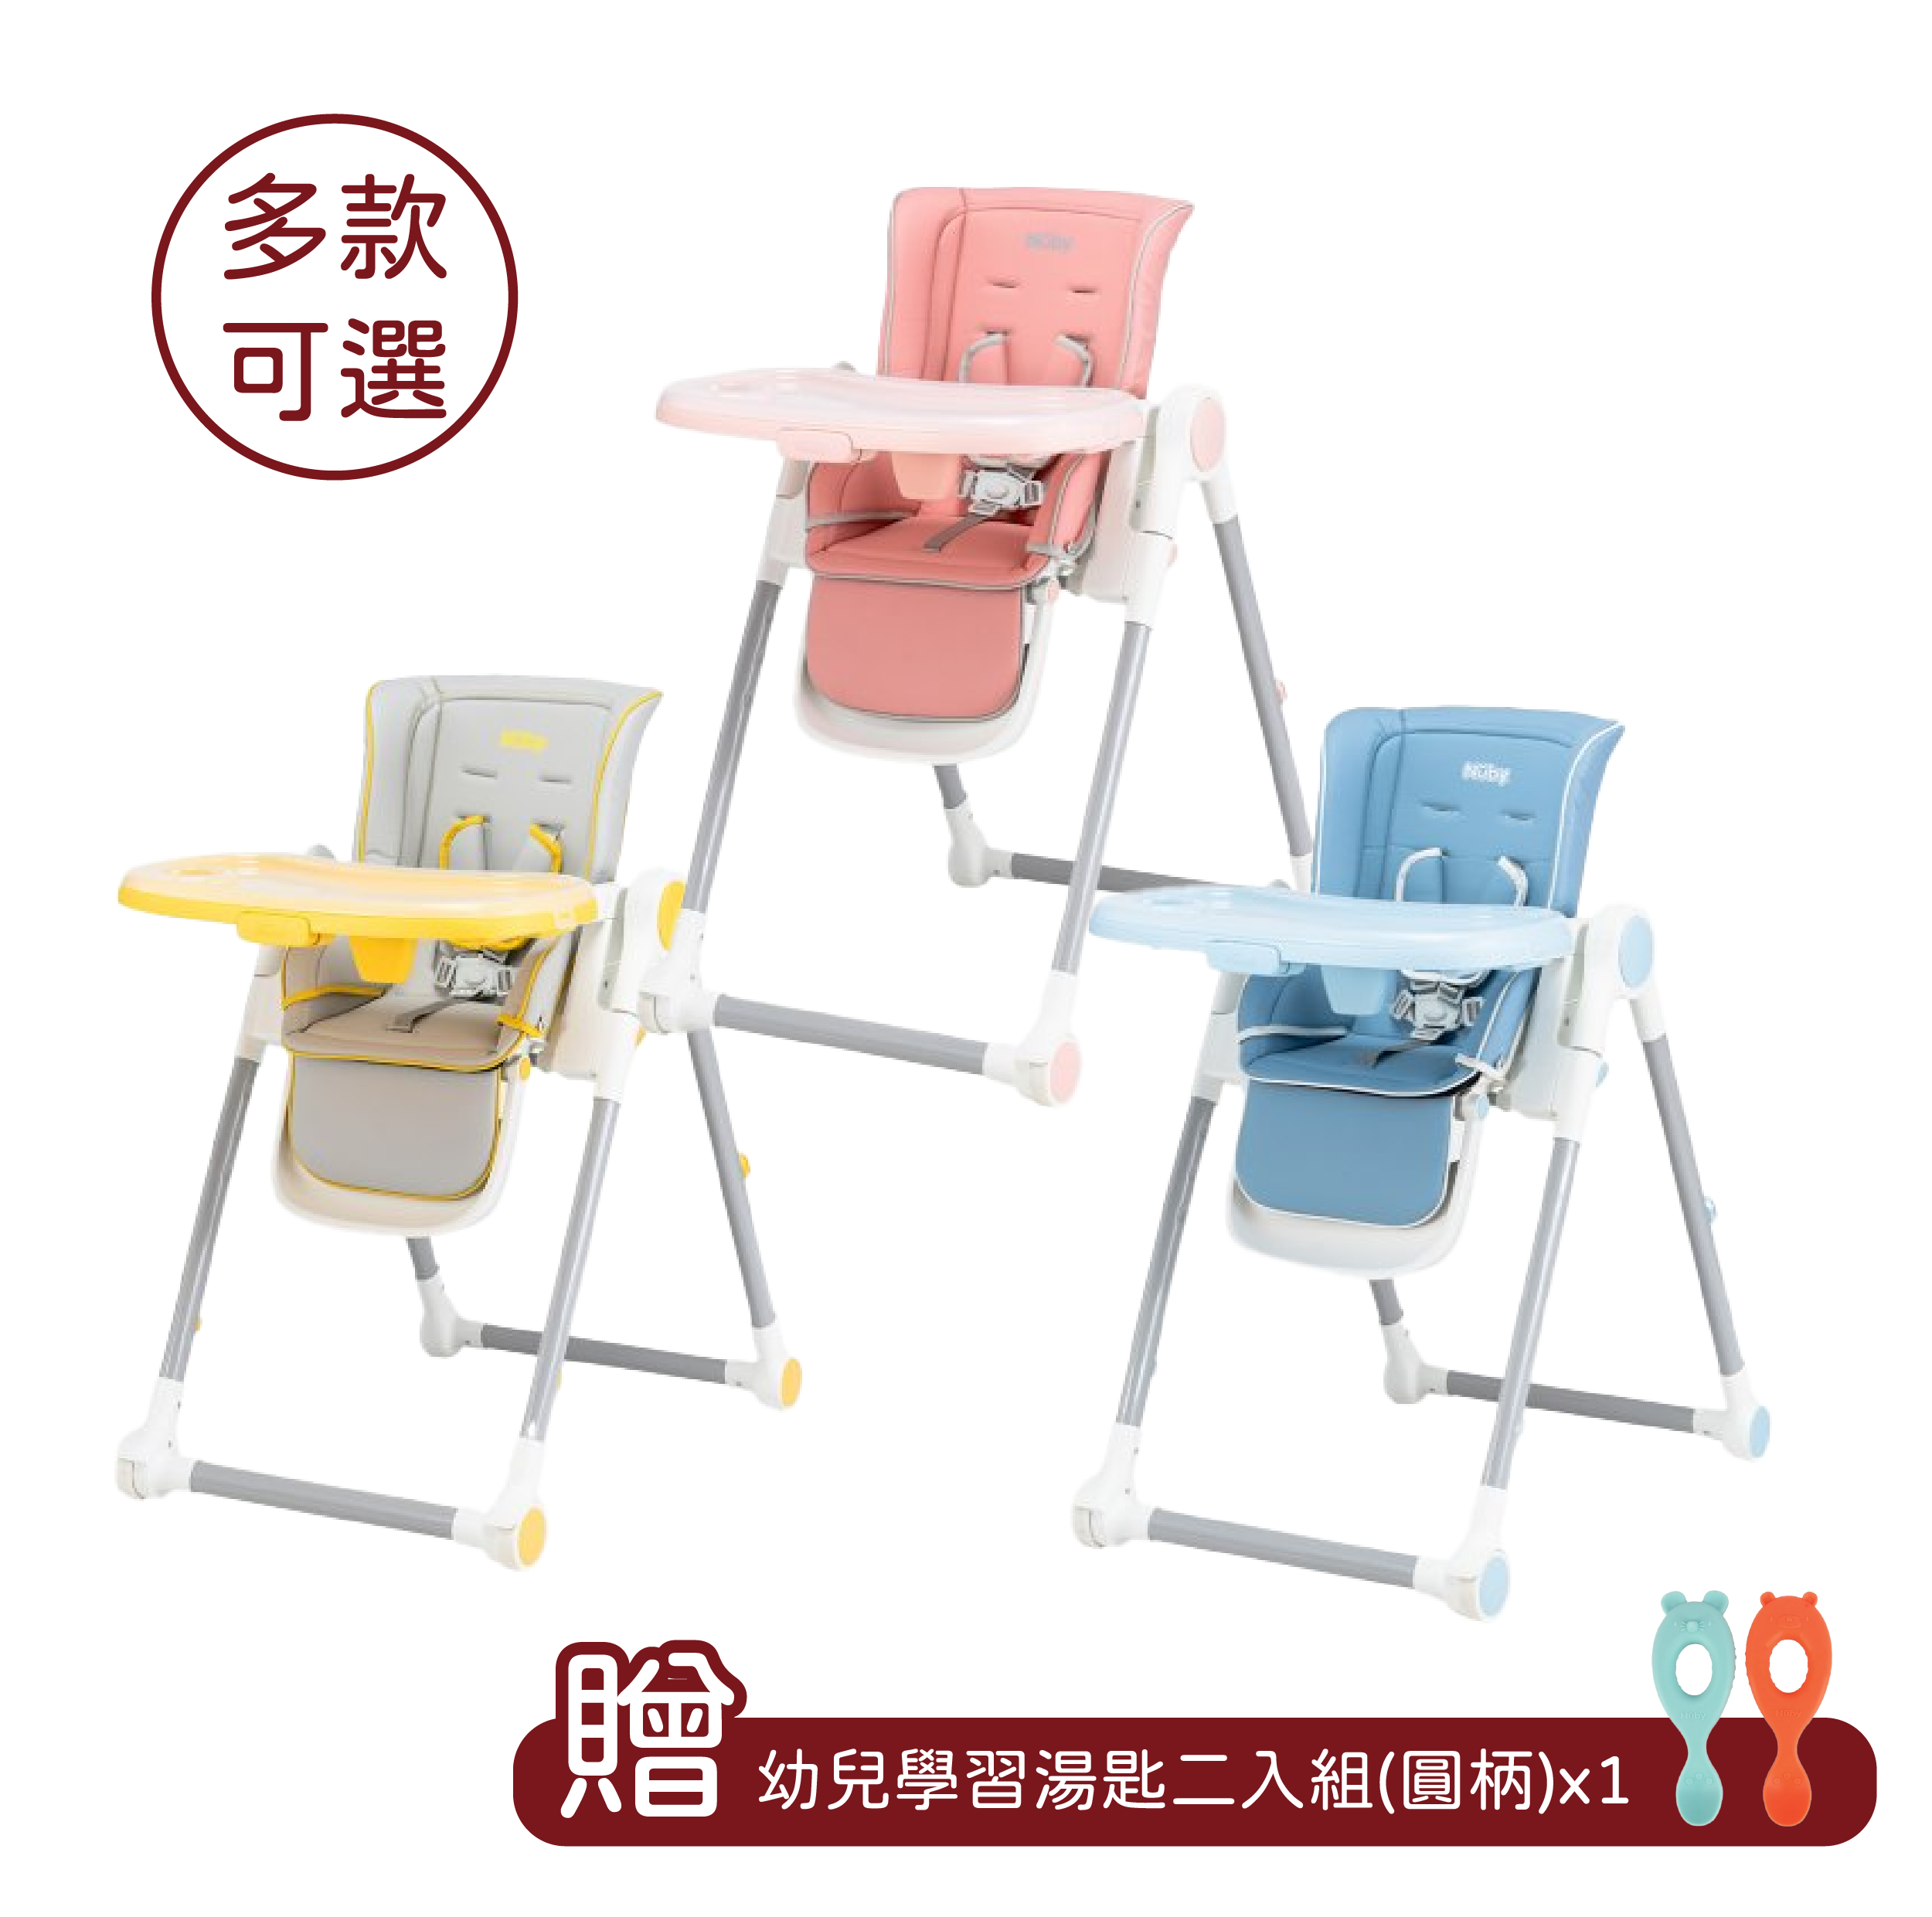 Nuby 多段式兒童餐椅-3色可選【贈幼兒學習湯匙二入組(圓柄)】【悅兒園婦幼生活館】